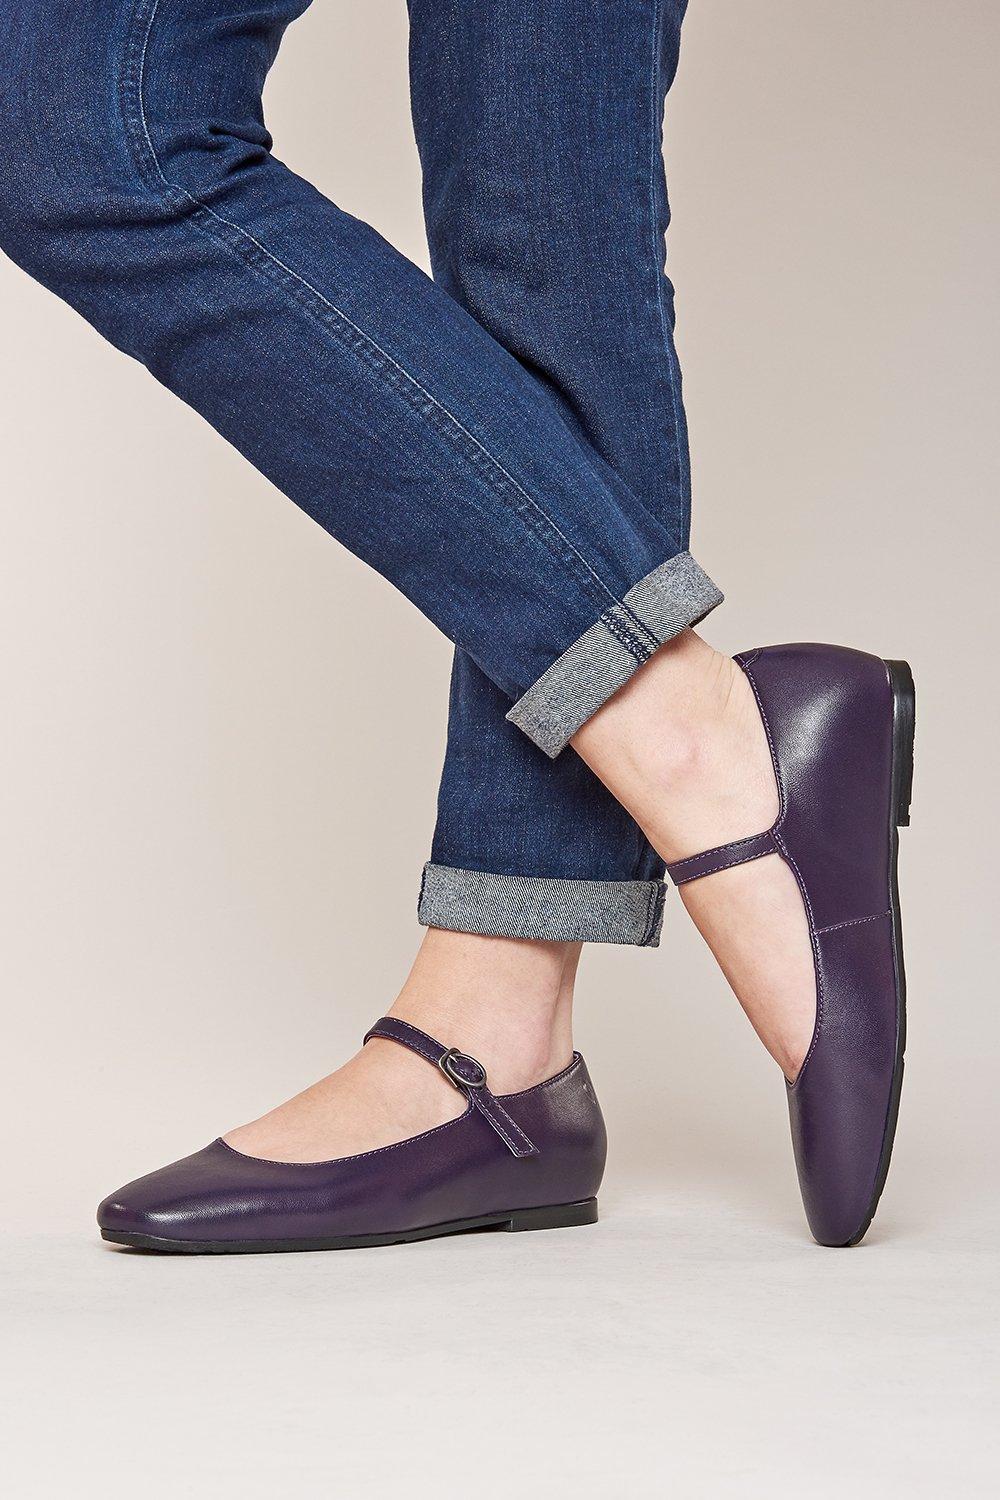 Балетки Piper с квадратным носком Moshulu, фиолетовый туфли пуанты для девочек танцевальные балетки профессиональные женские туфли балетки на плоской подошве женская обувь с шелковым покрыт